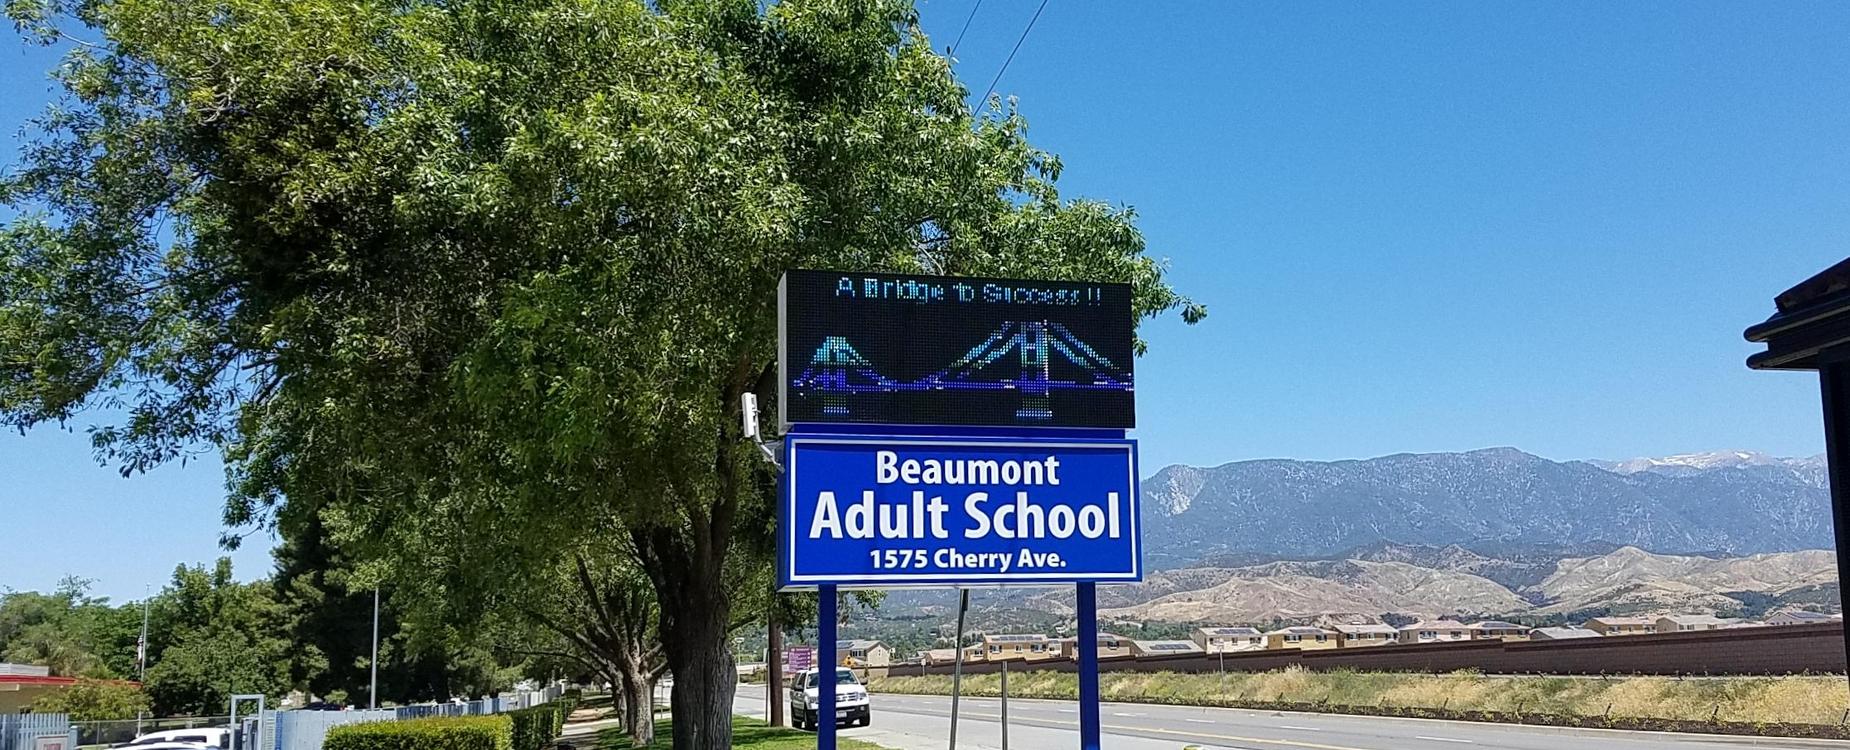 beaumont-adult-school